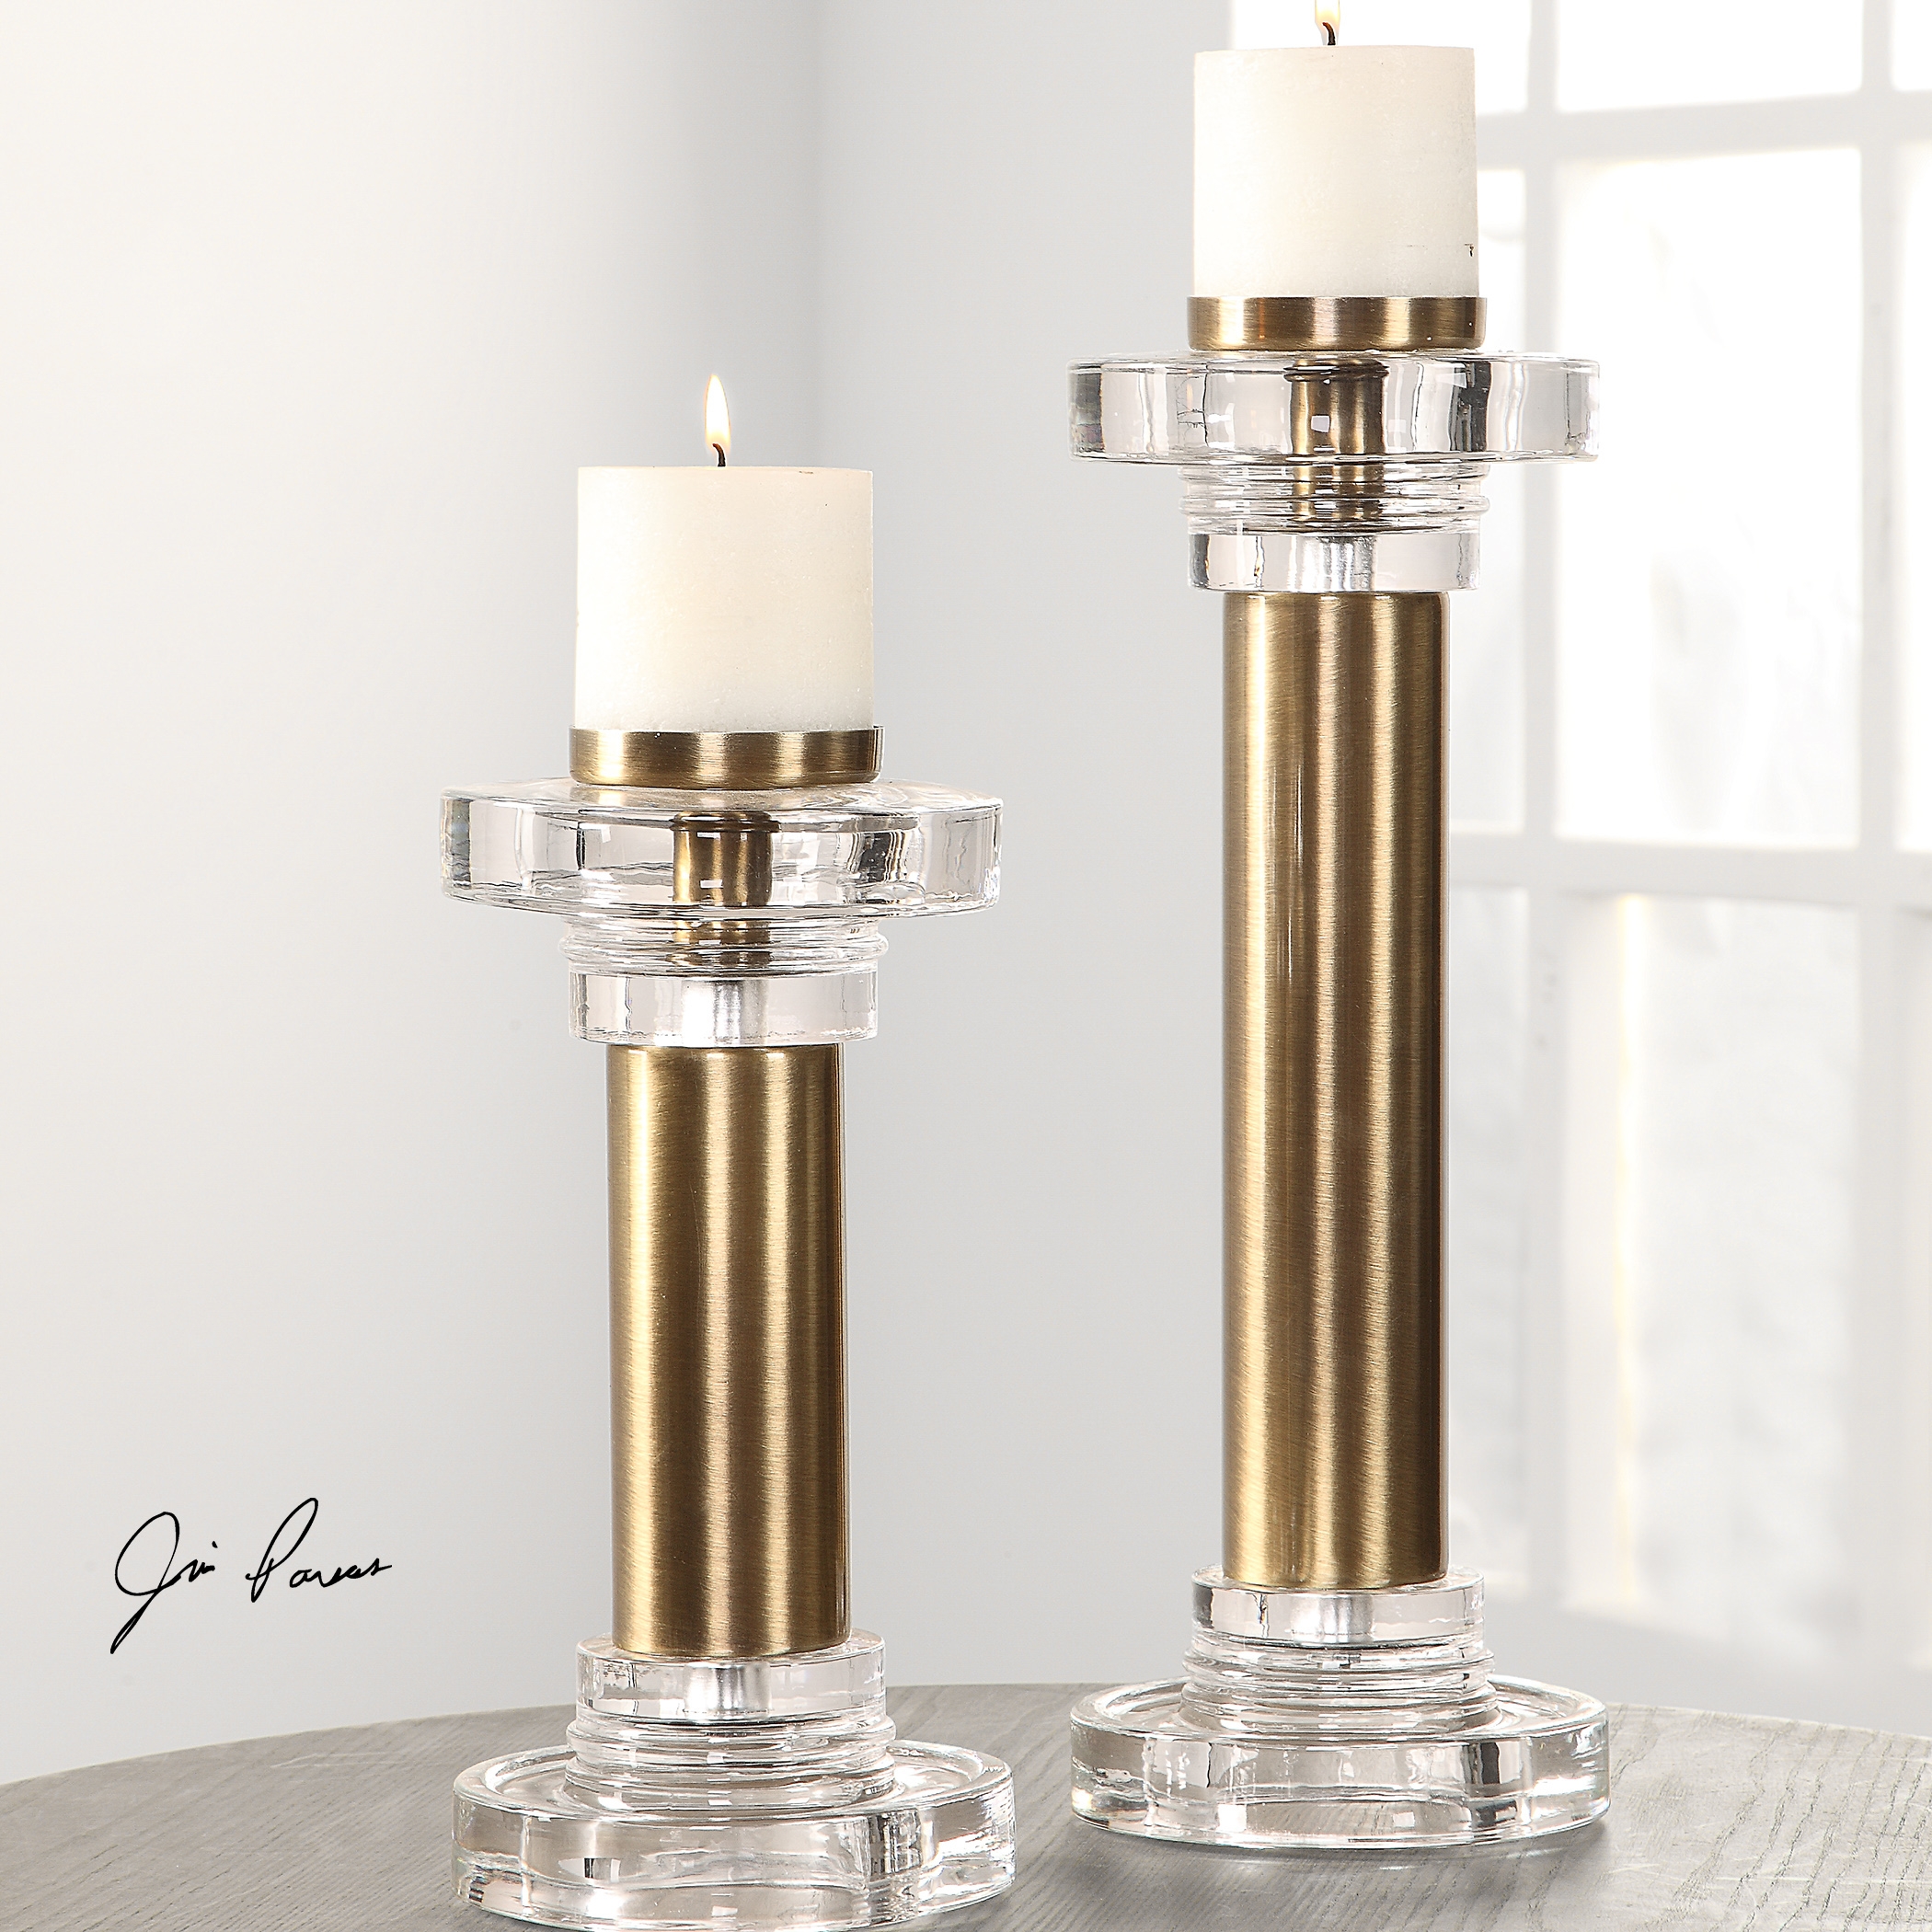 Leslie Brushed Brass Candleholders, Set of 2 - Image 2